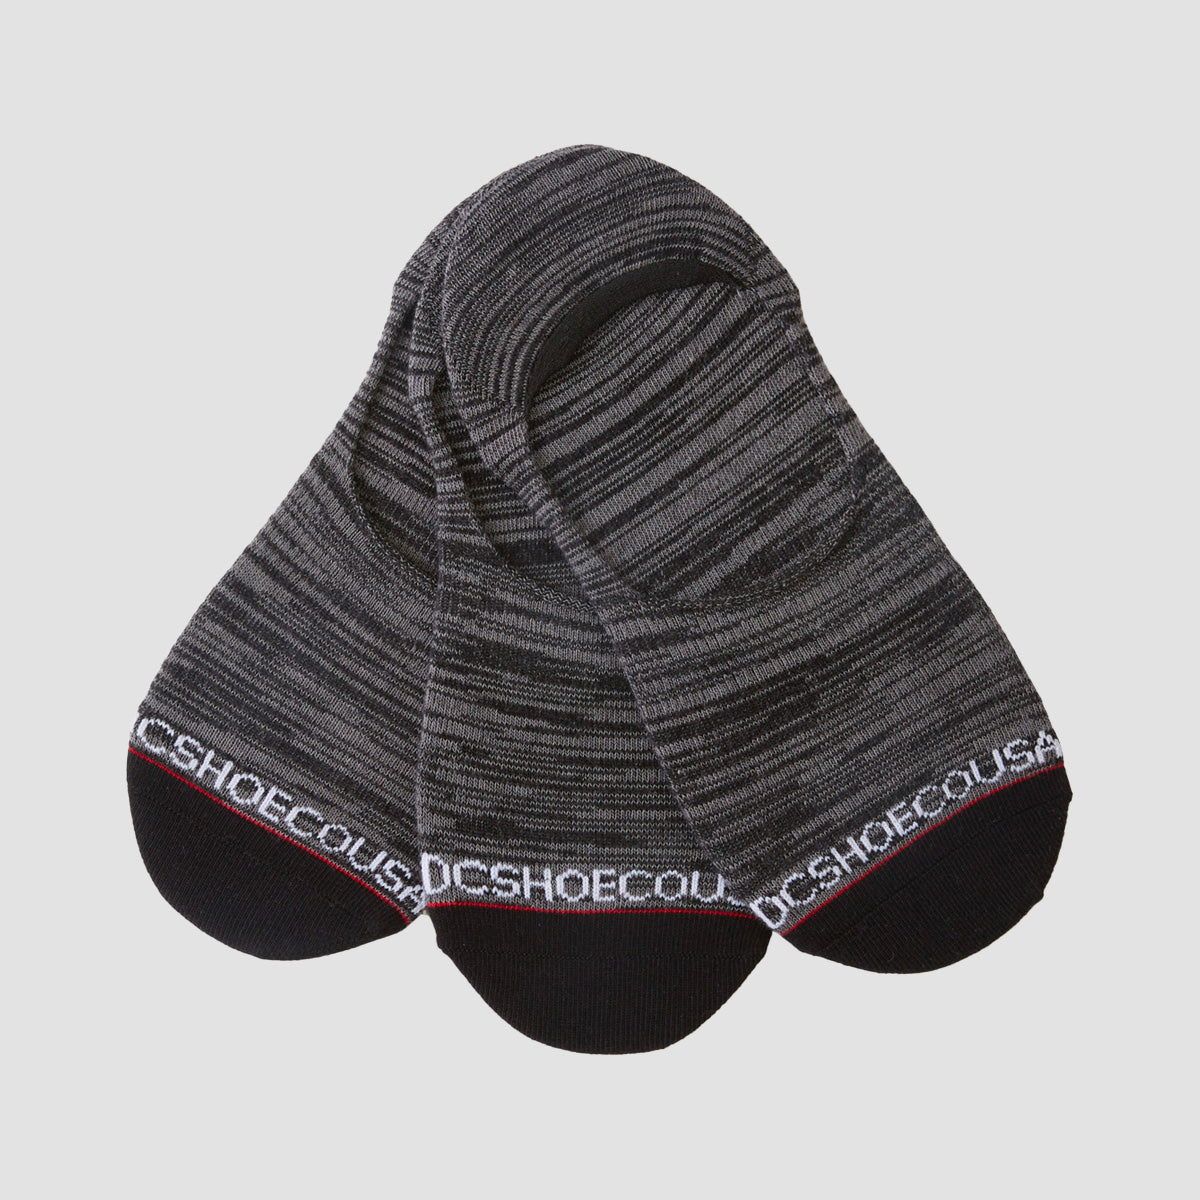 DC Marled Liner Socks 3 Pack Black